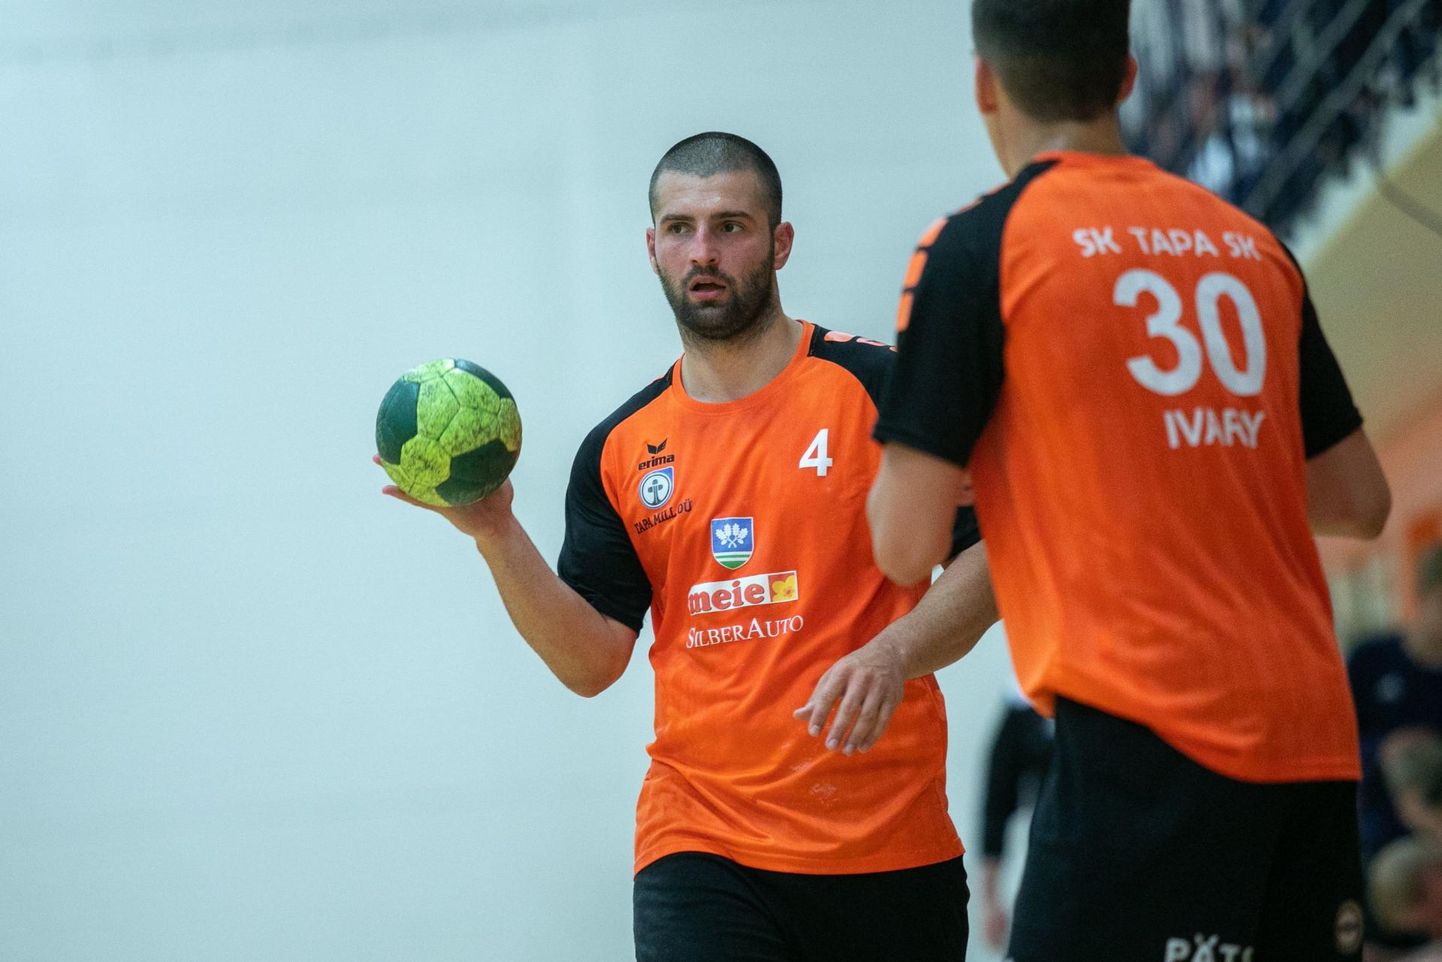 Spordiklubi Tapa meeskonna üks liidreid Aleksandr Oganezov on visanud koduklubi kasuks kolme vooruga 16 väravat, mis on praegu käsipalli meistriliigas teine-kolmas näitaja.